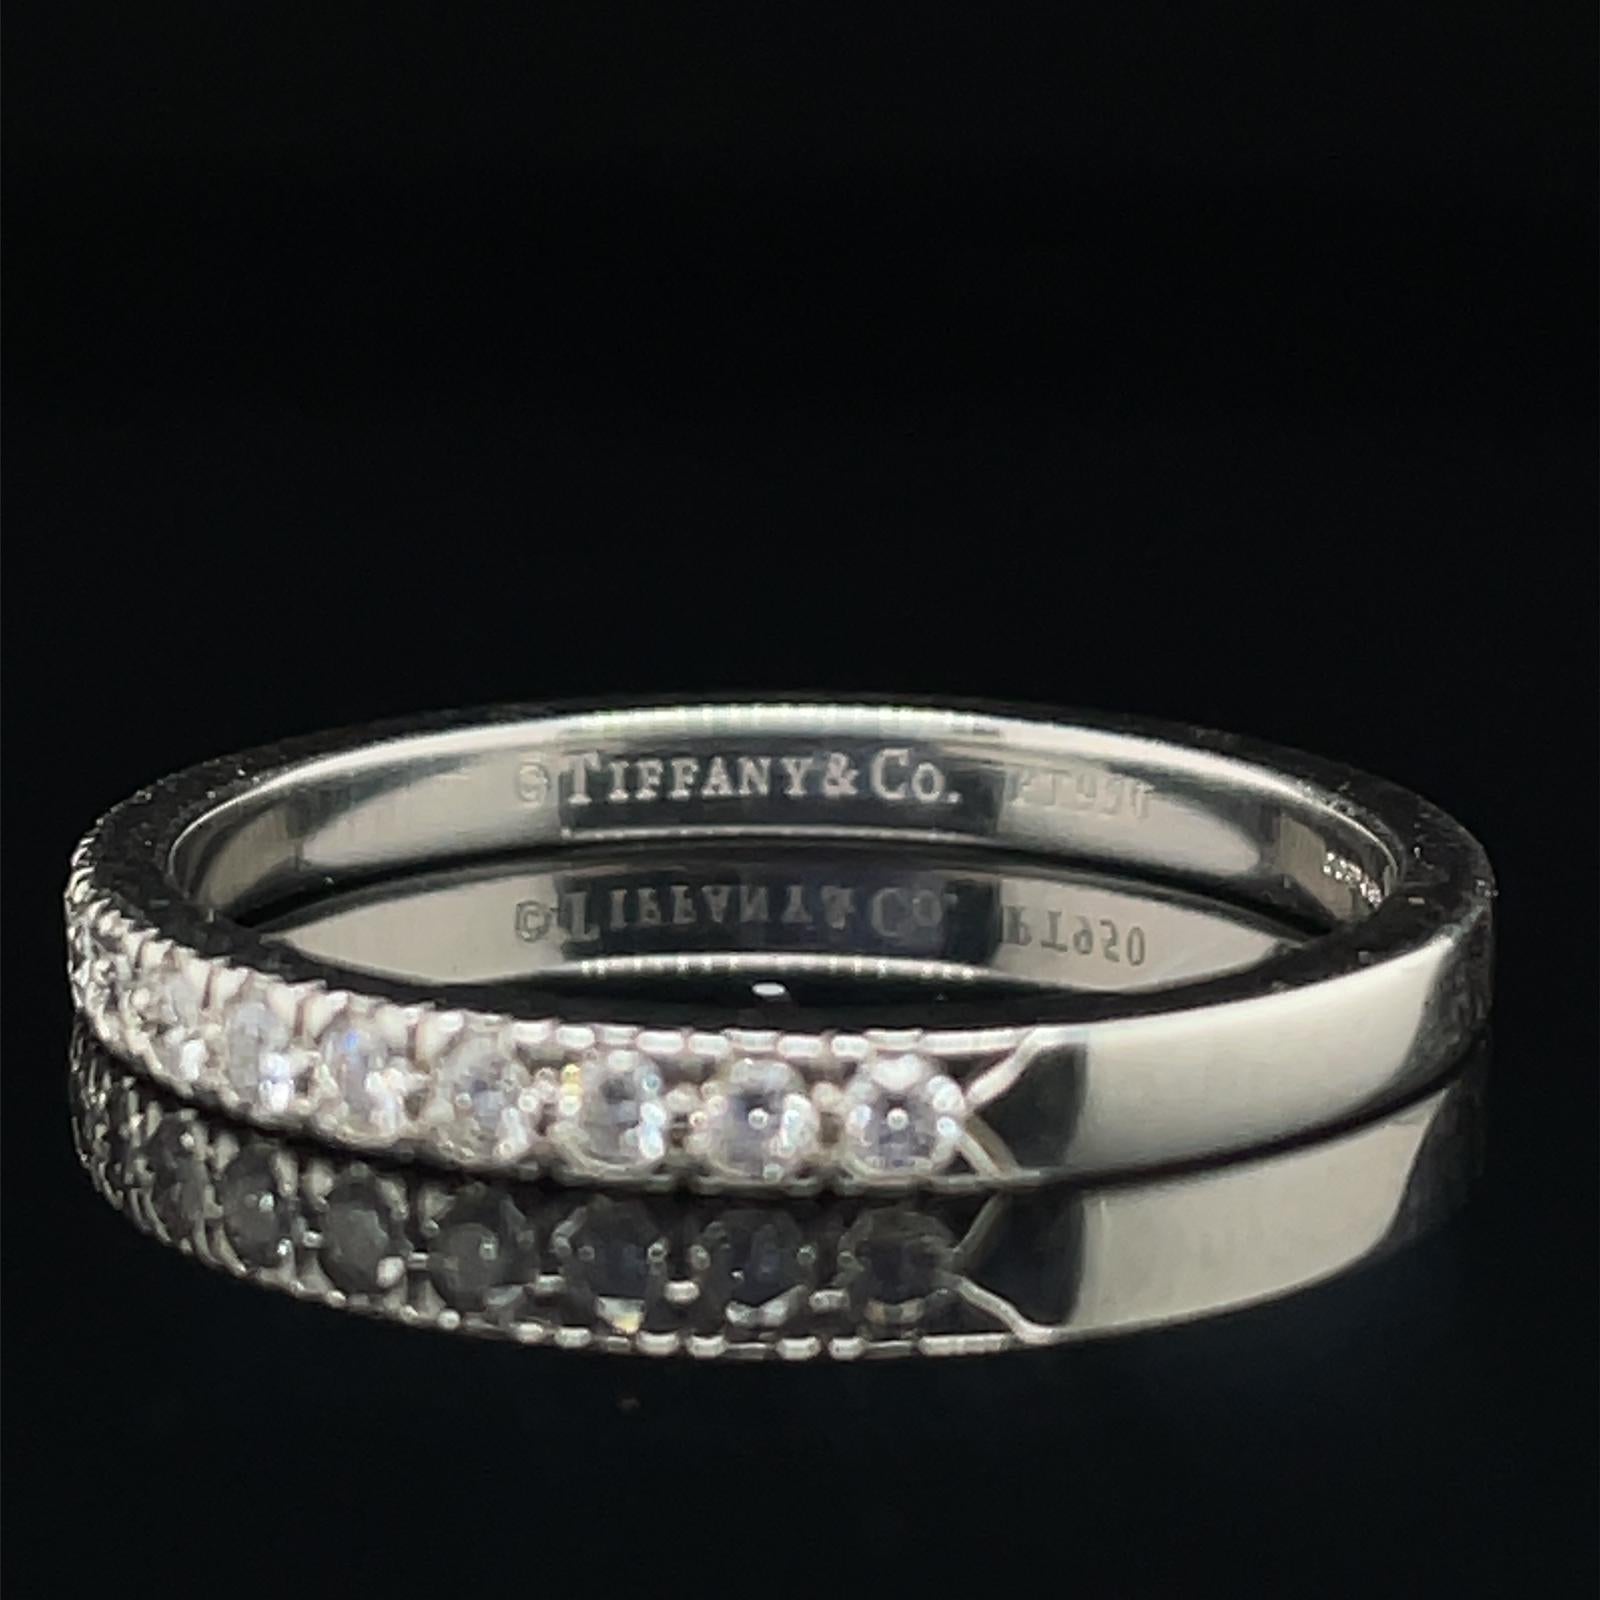 Ein diamantener Platin-Halb-Ewigkeitsring von Tiffany & Co.

Dieses zeitlose und elegante Ewigkeitsband ist mit einer einzigen Reihe von siebzehn runden Steinen im Brillantschliff von ca. 0,35 Karat besetzt, die von uns als Farbe G und Reinheit VS1